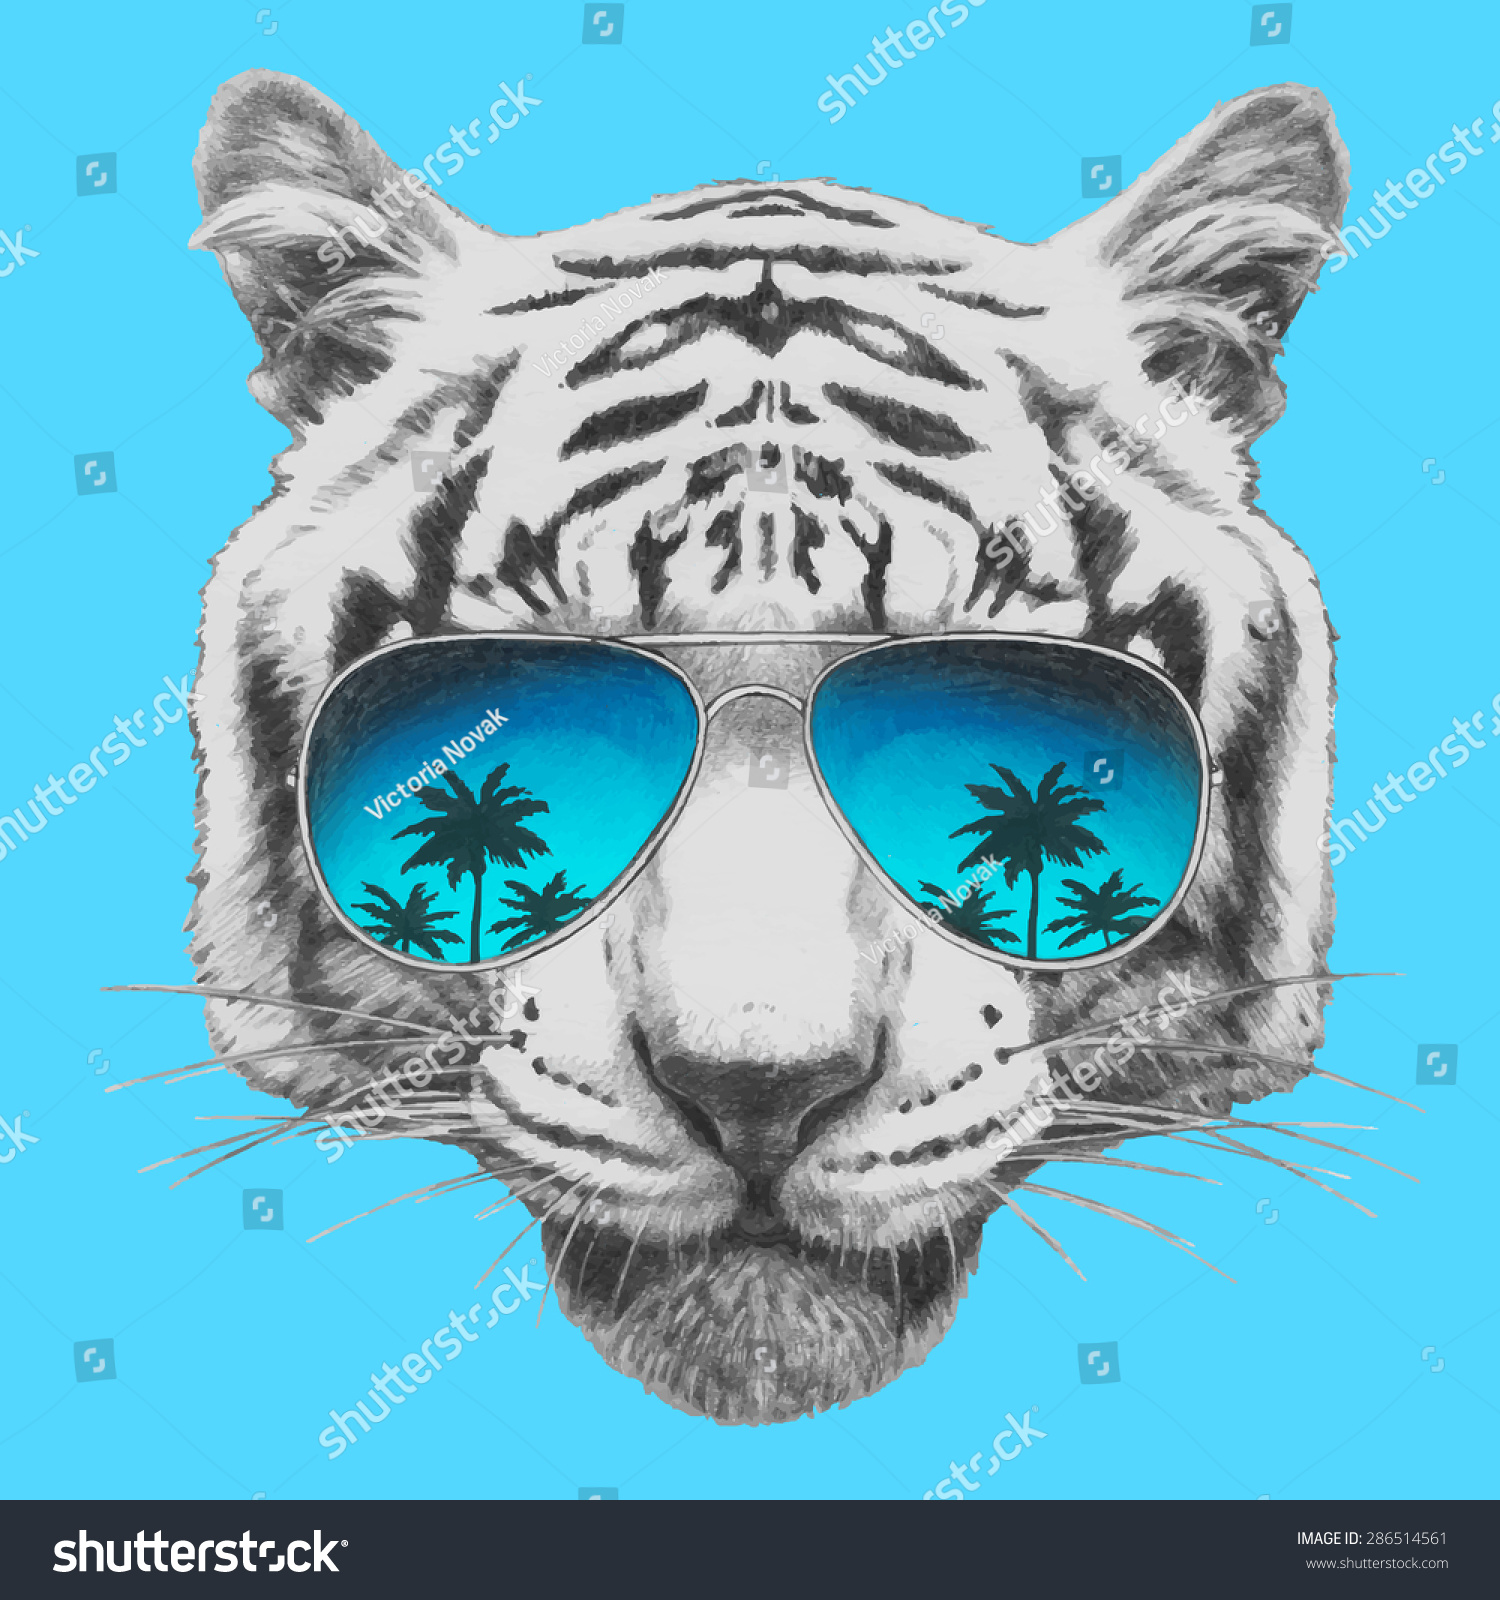 Hand Drawn Portrait Tiger Mirror Sunglasses Stock Vector 286514561 ...